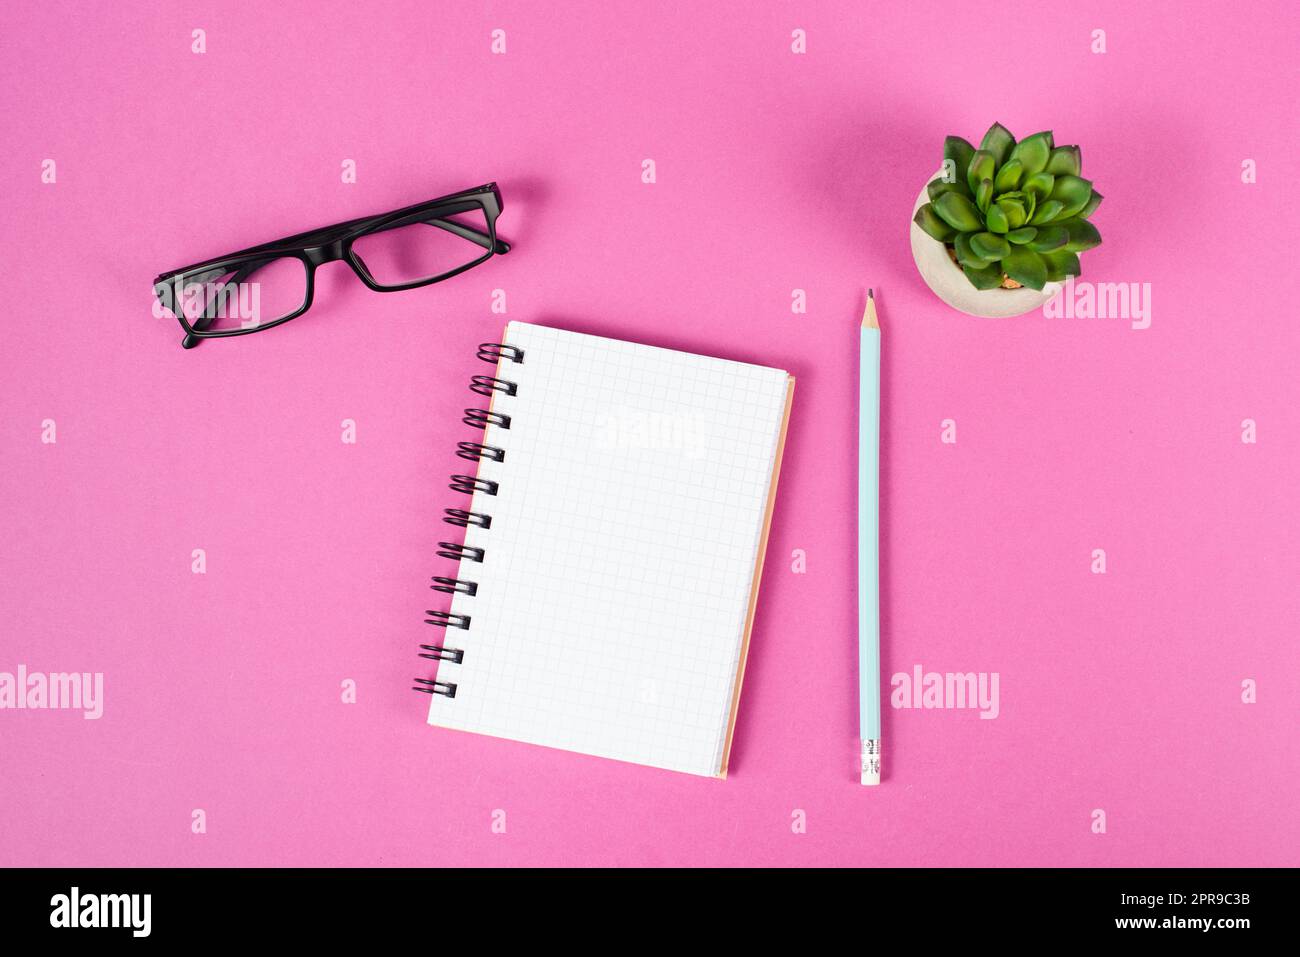 Leeres Notizbuch mit Stift, Brille und Kaktus auf pinkfarbenem Hintergrund, Brainstorming für neue Ideen, Schreiben einer Nachricht, Pause, Schreibtisch im Home Office Stockfoto